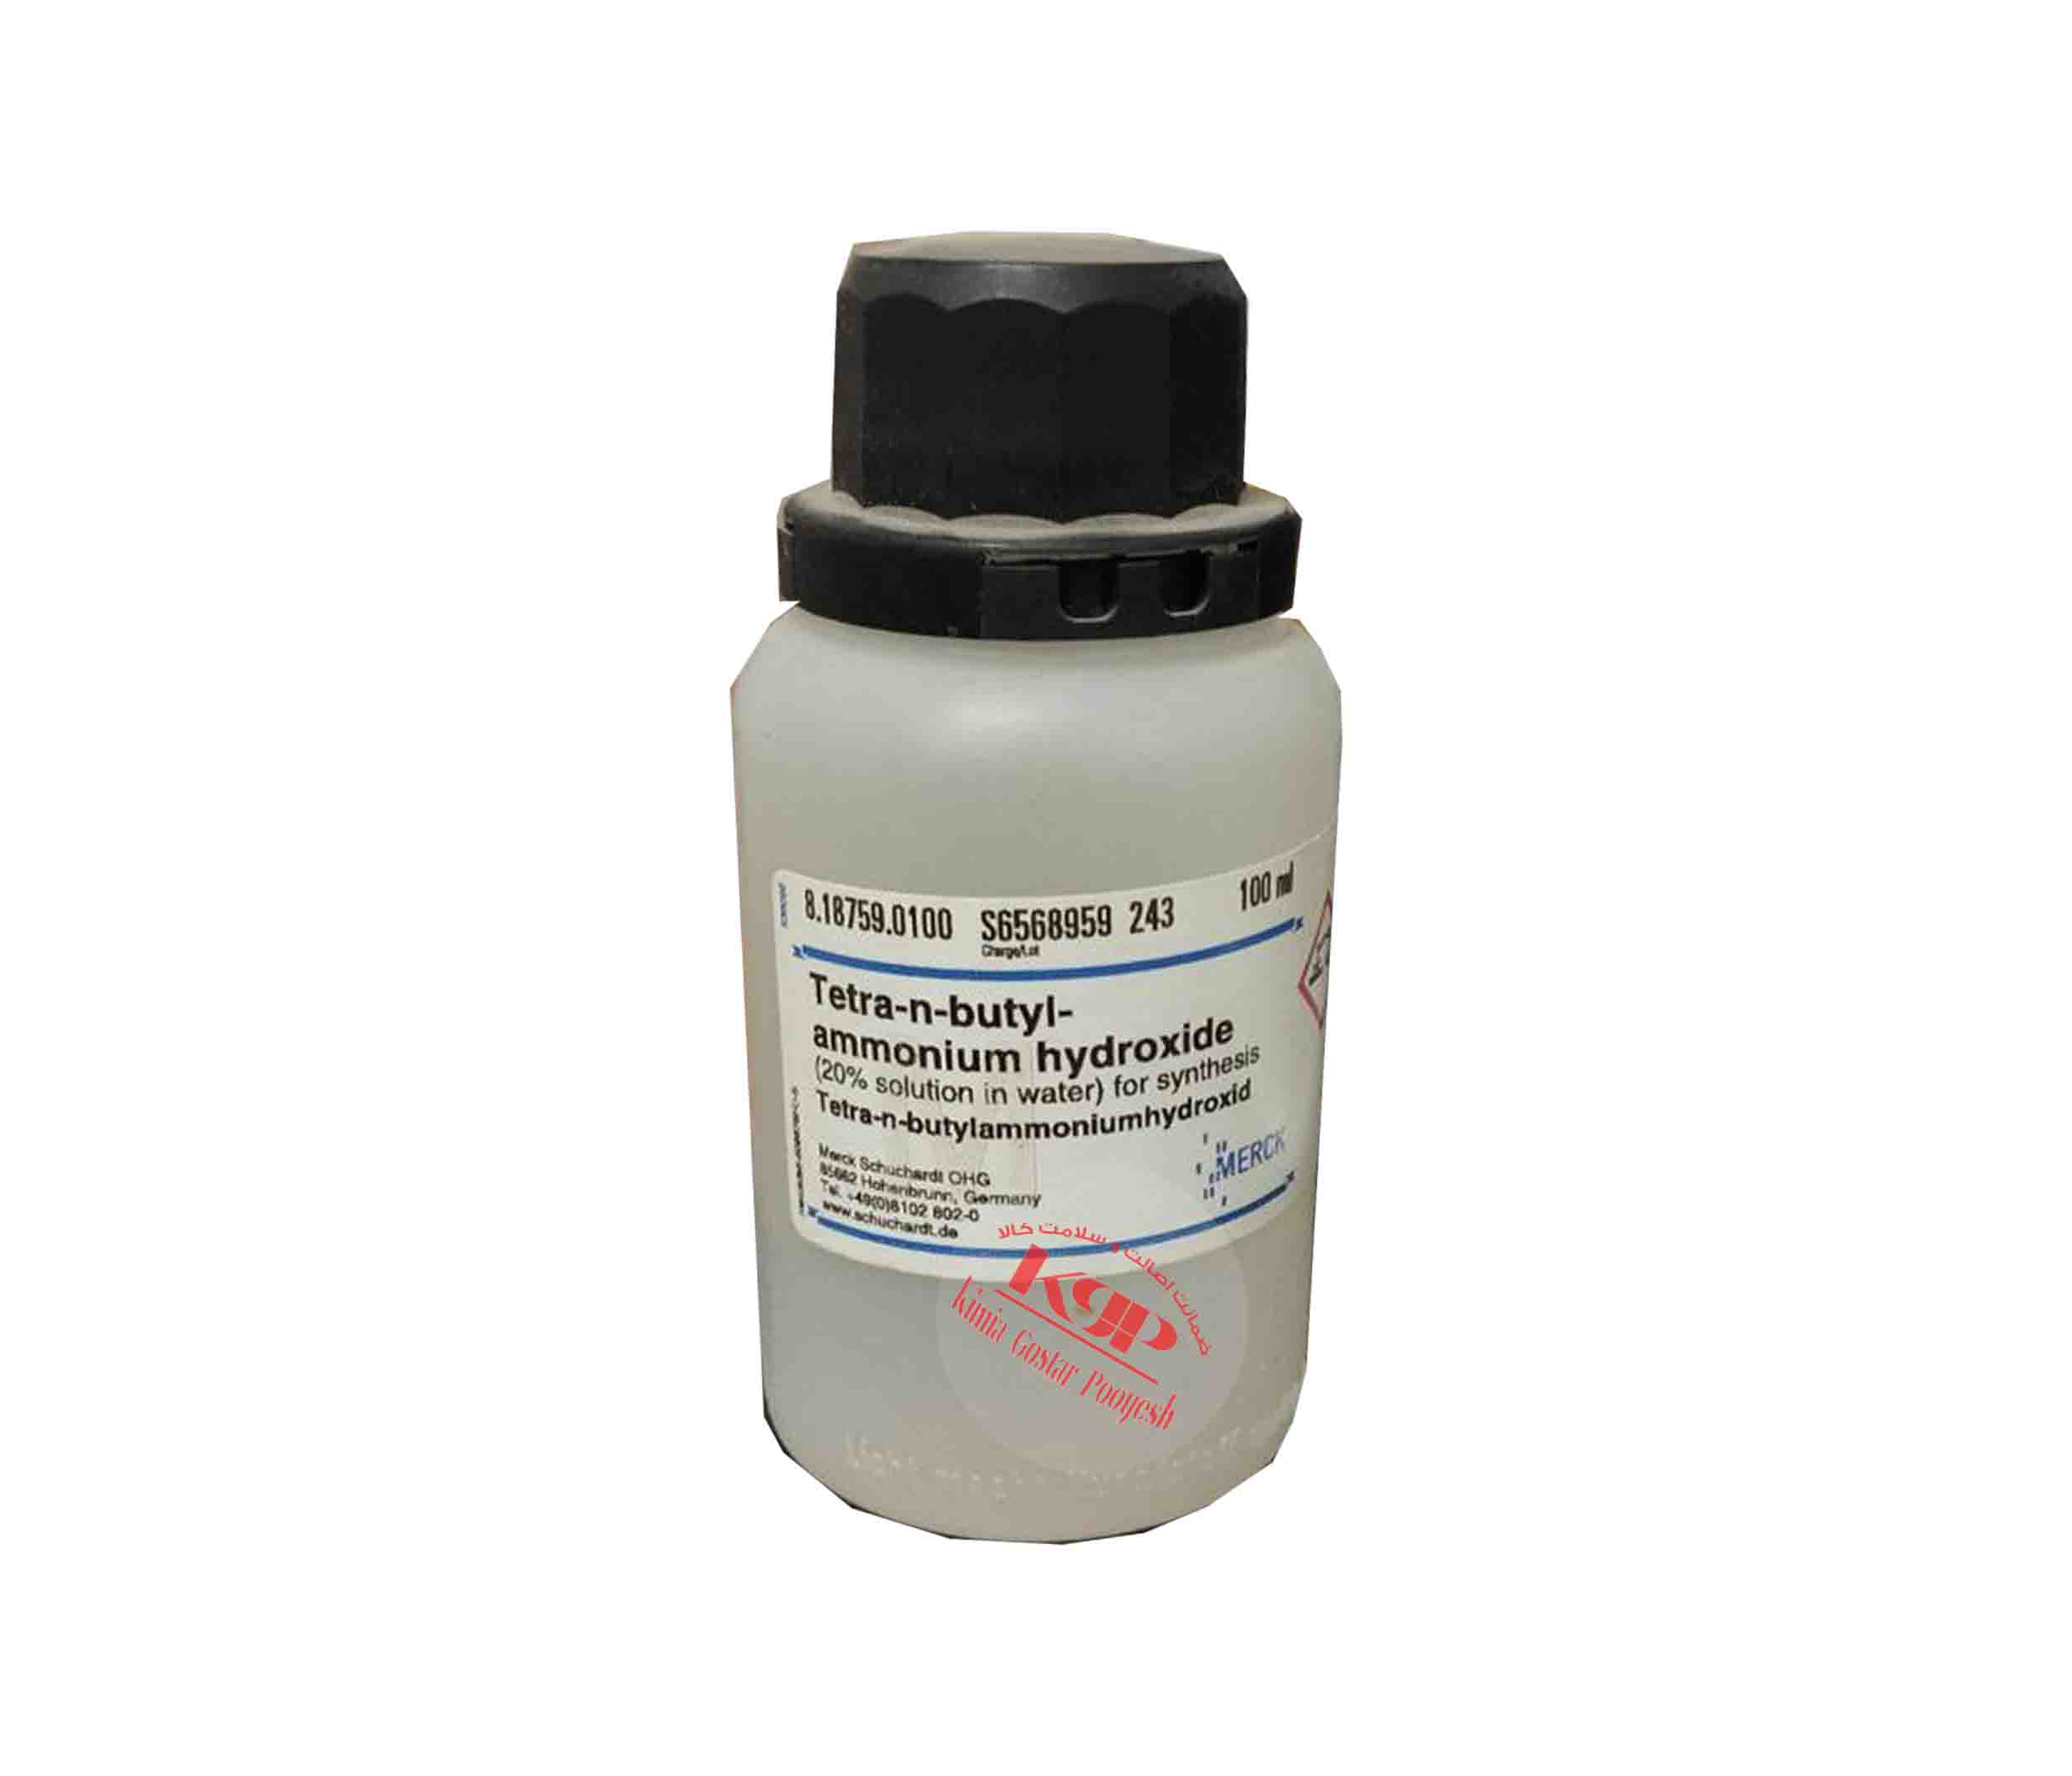 Tetra-n-butylammonium hydroxide